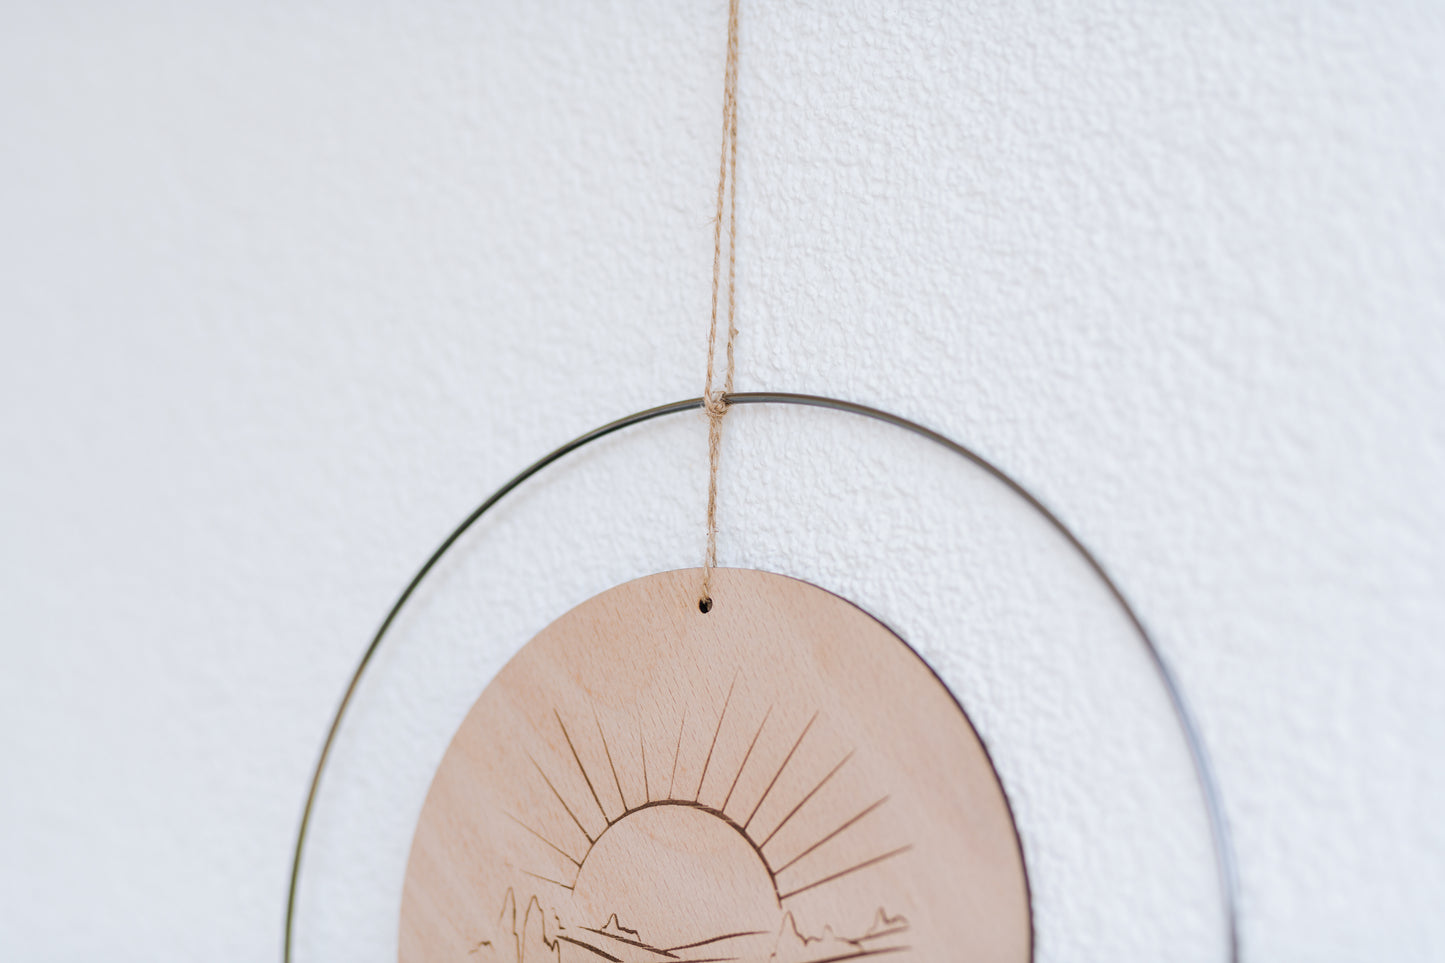 Spirituelle Deko aus Holz - Rustikale Dekoration Sonne "Let Your Soul Shine" mit Blumen (Design II | Rot) - Lokale Herstellung